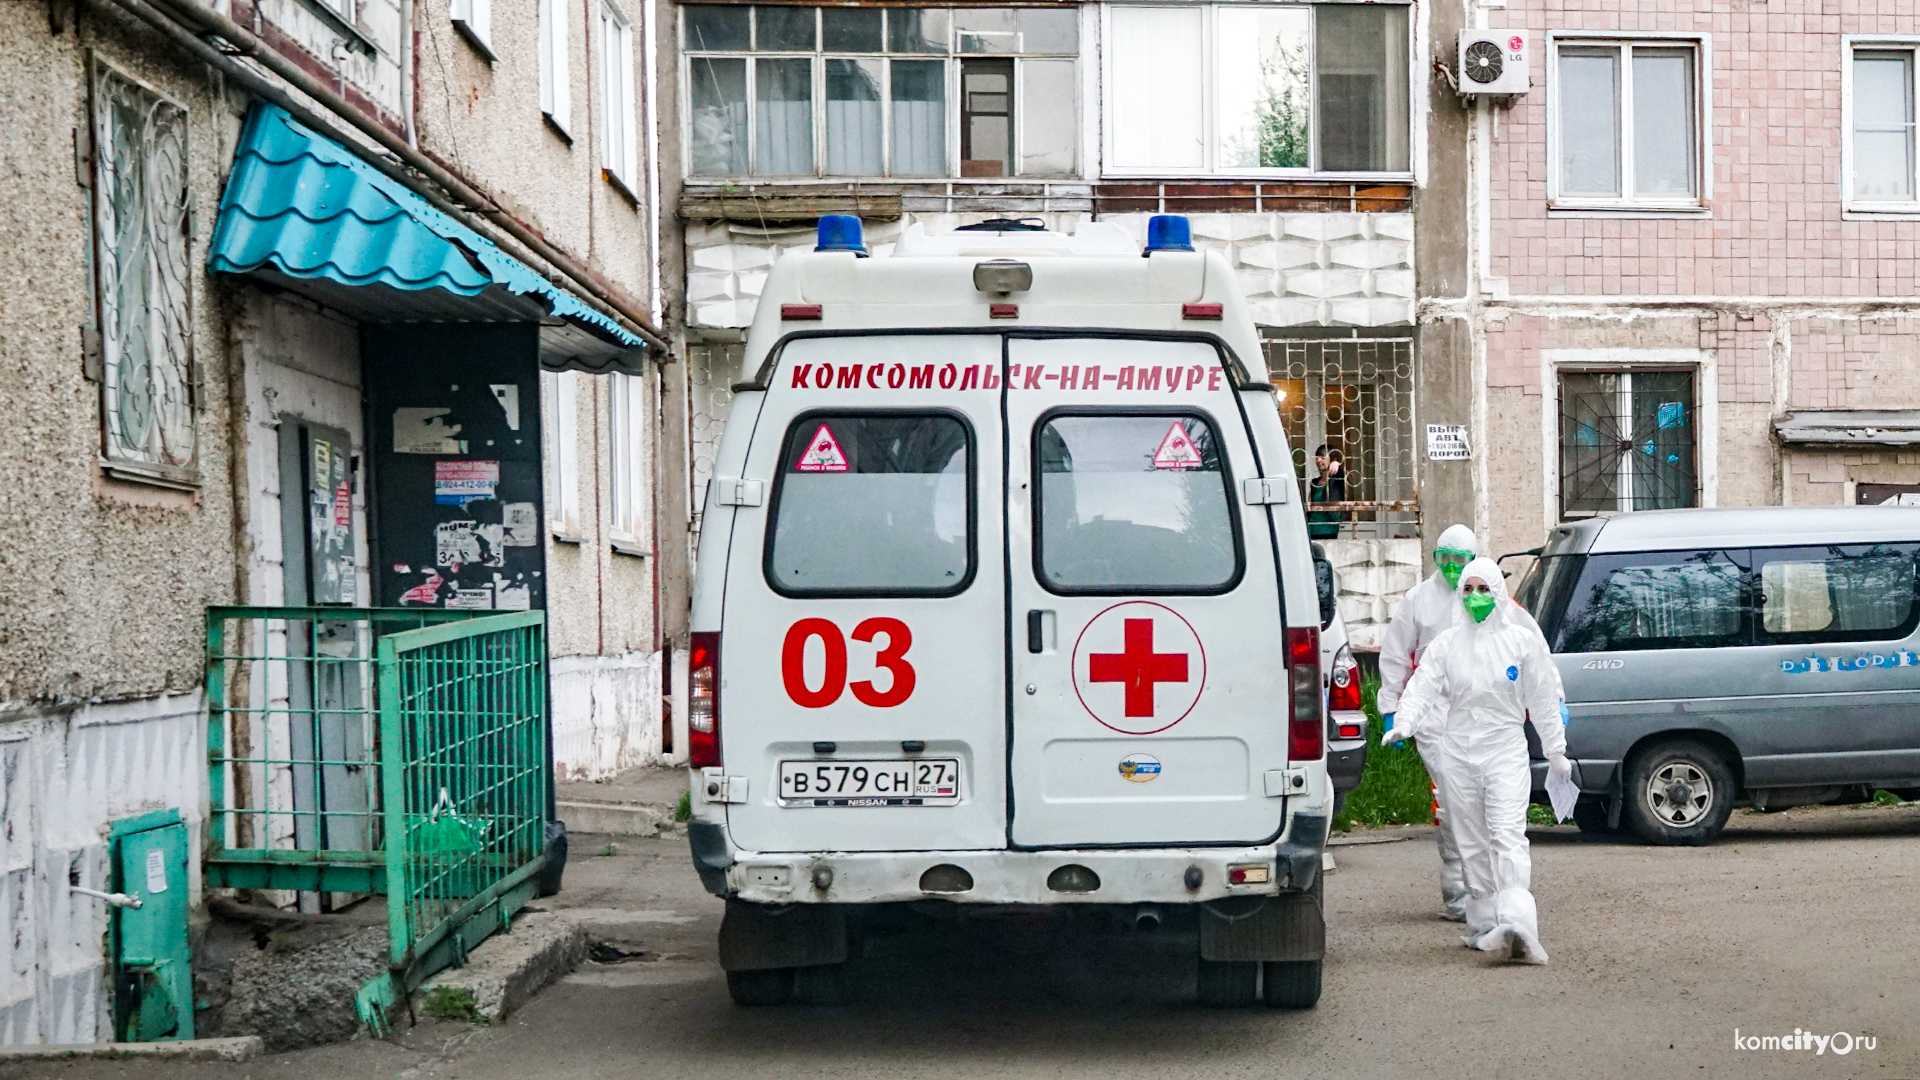 Ещё 30 пациентов поступило в инфекционные госпитали Комсомольска-на-Амуре за сутки